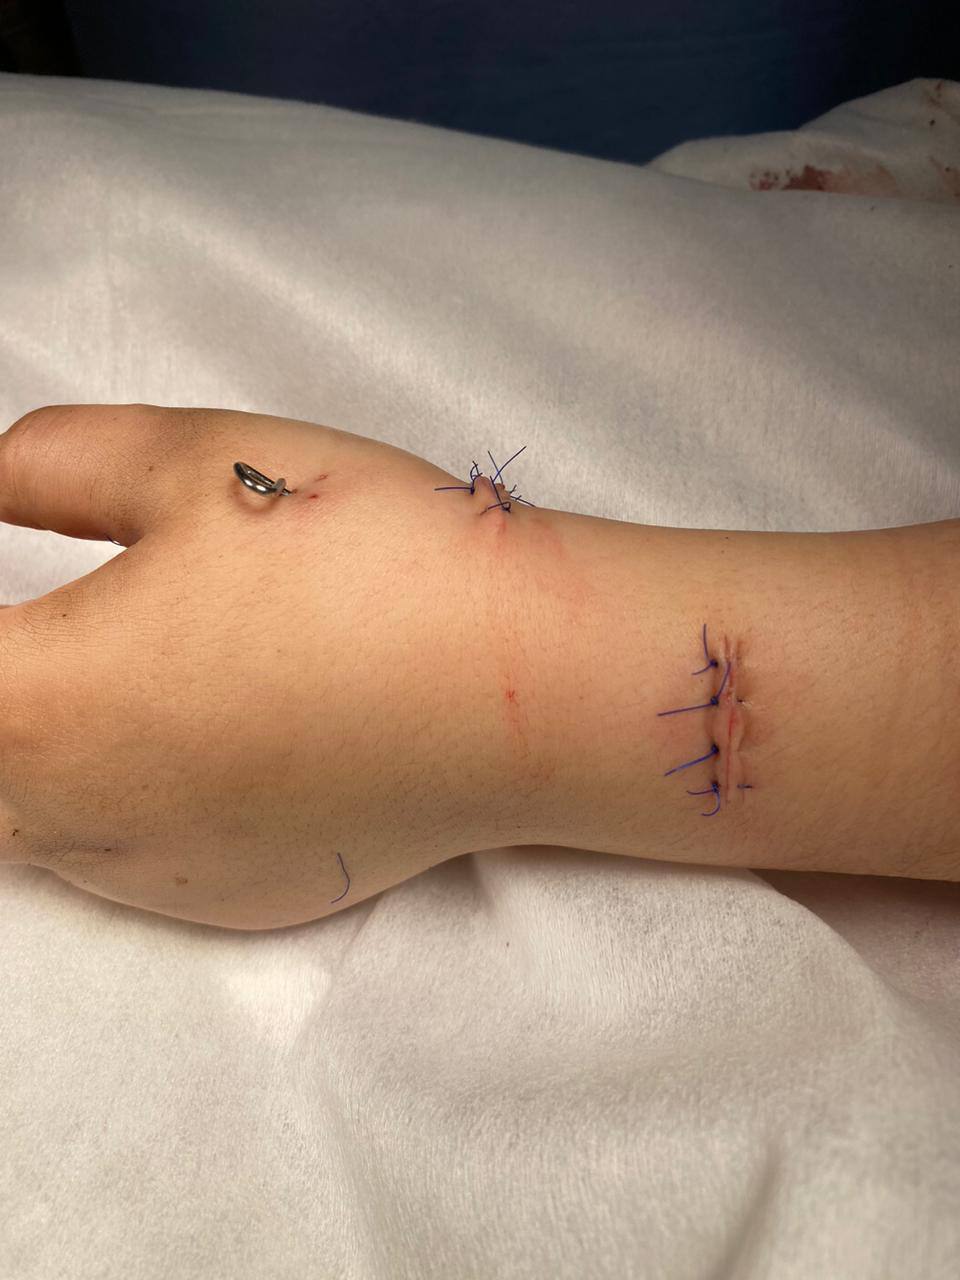 Микрохирурги Педиатрического университета 10 часов оперировали ребёнка, рука которого попала в блендер 5